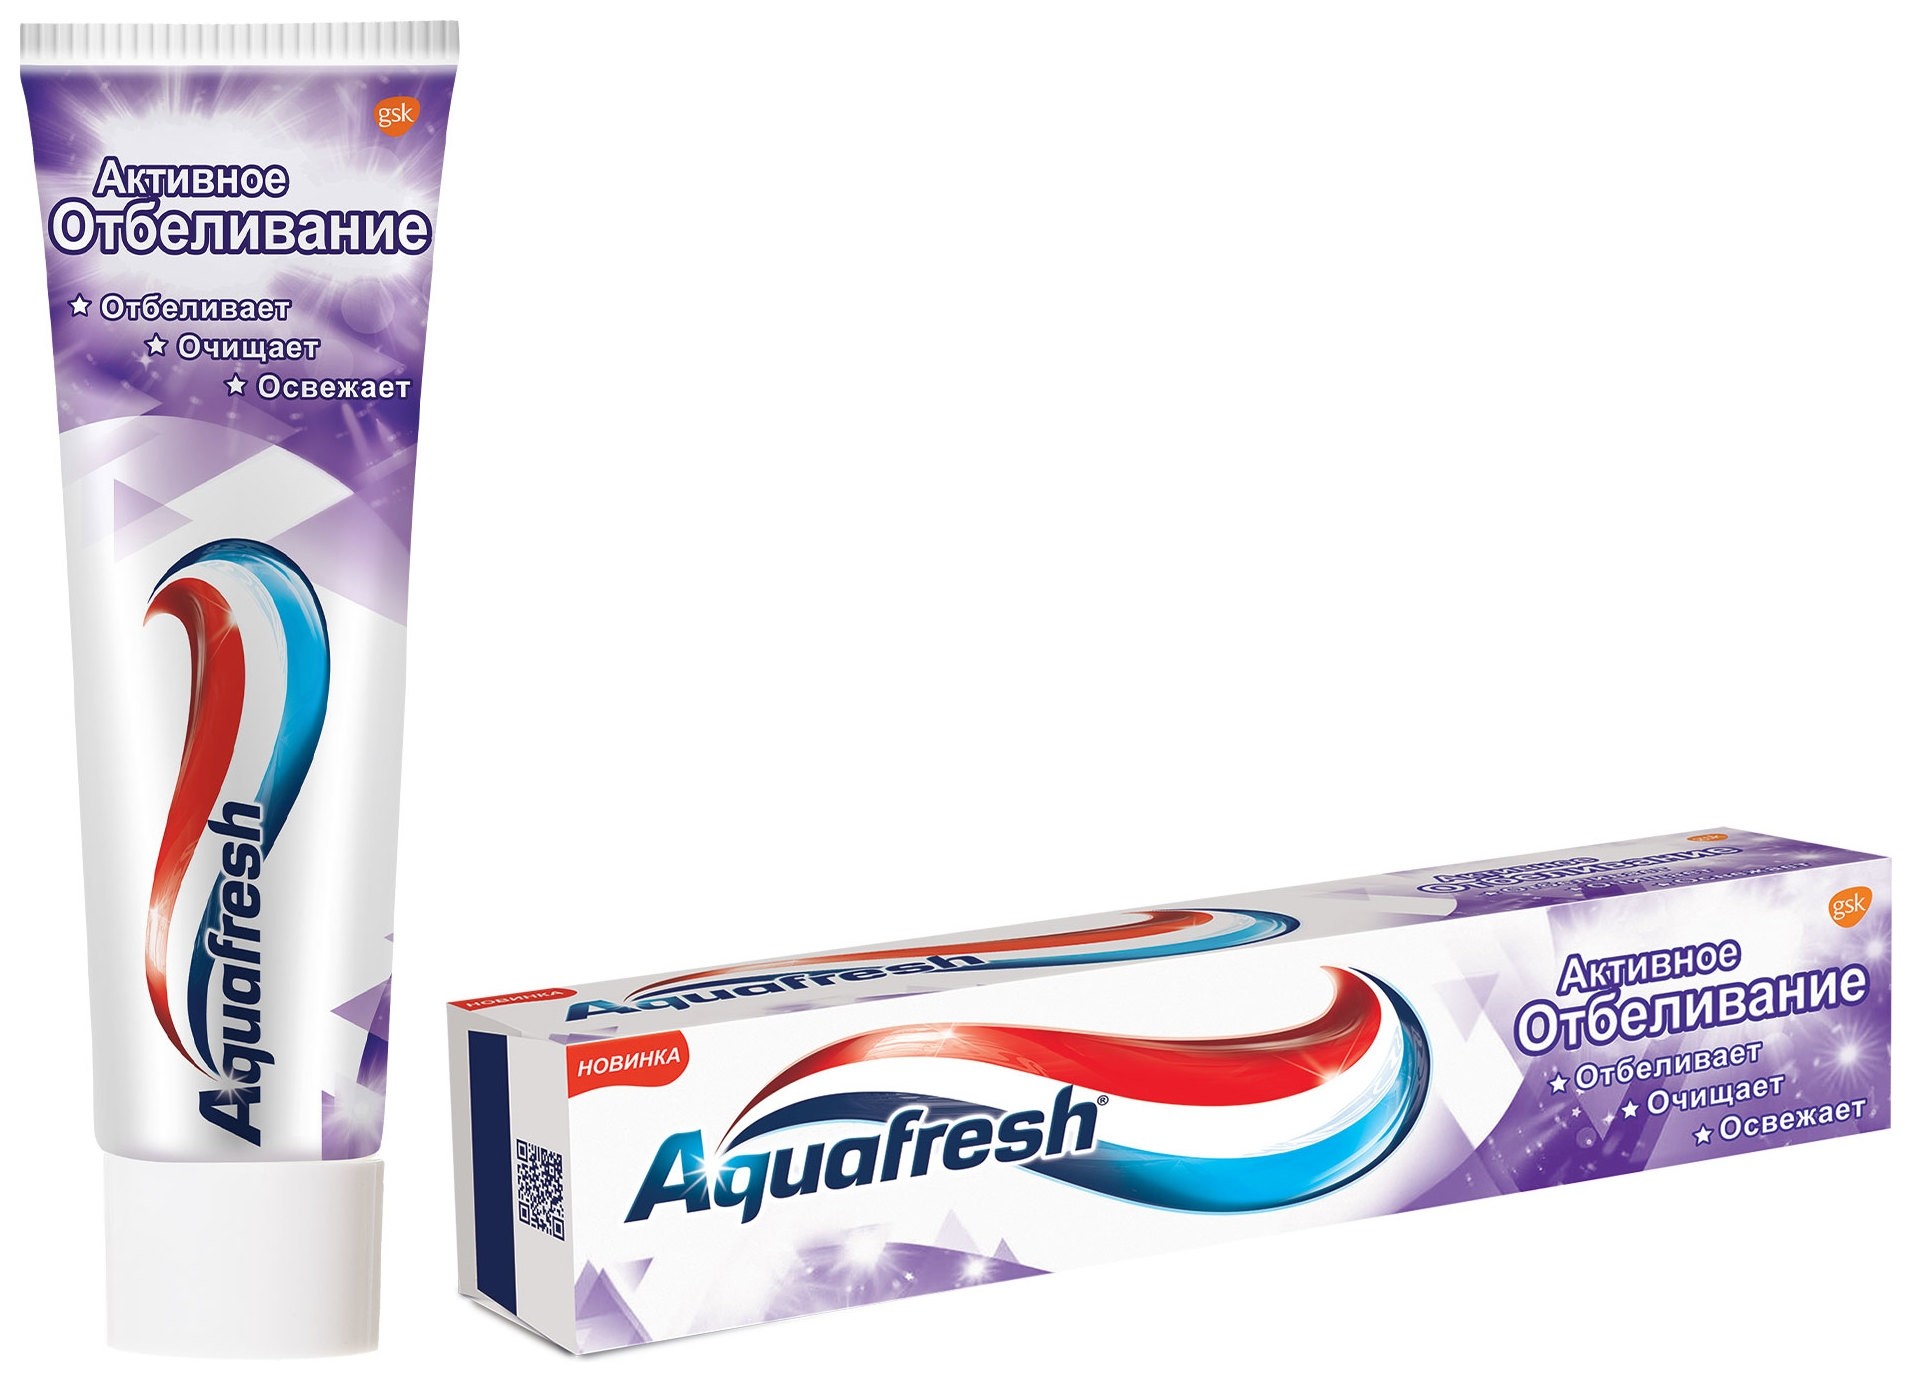 Aquafresh аквафреш активное отбеливание, зубная паста, 100 мл